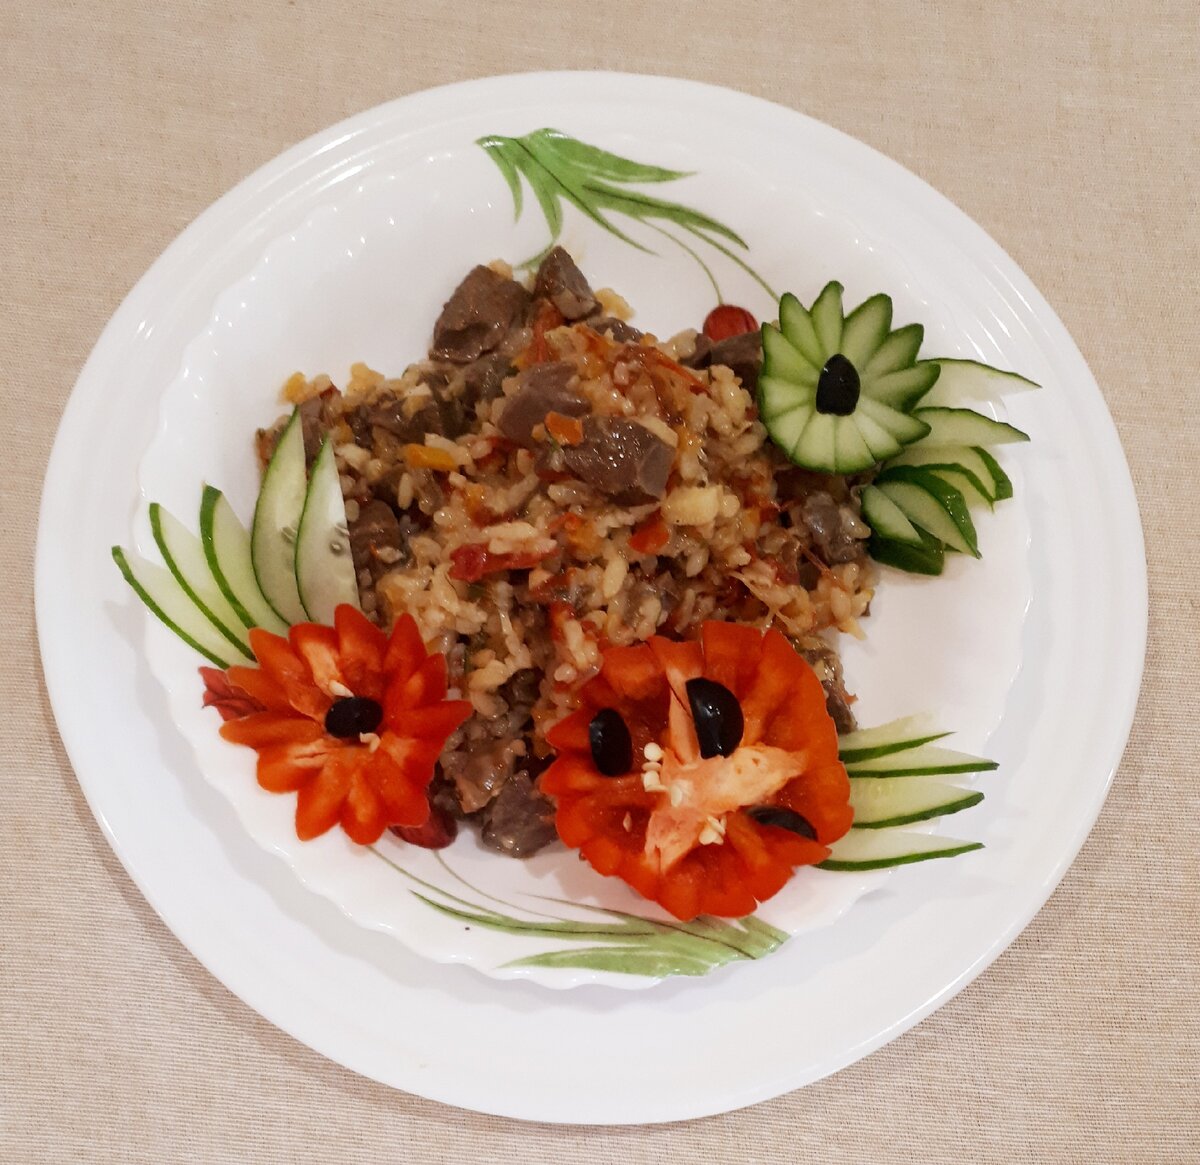 Салат из сердца индейки рецепт с фото | Рецепт | Национальная еда, Кулинария, Идеи для блюд